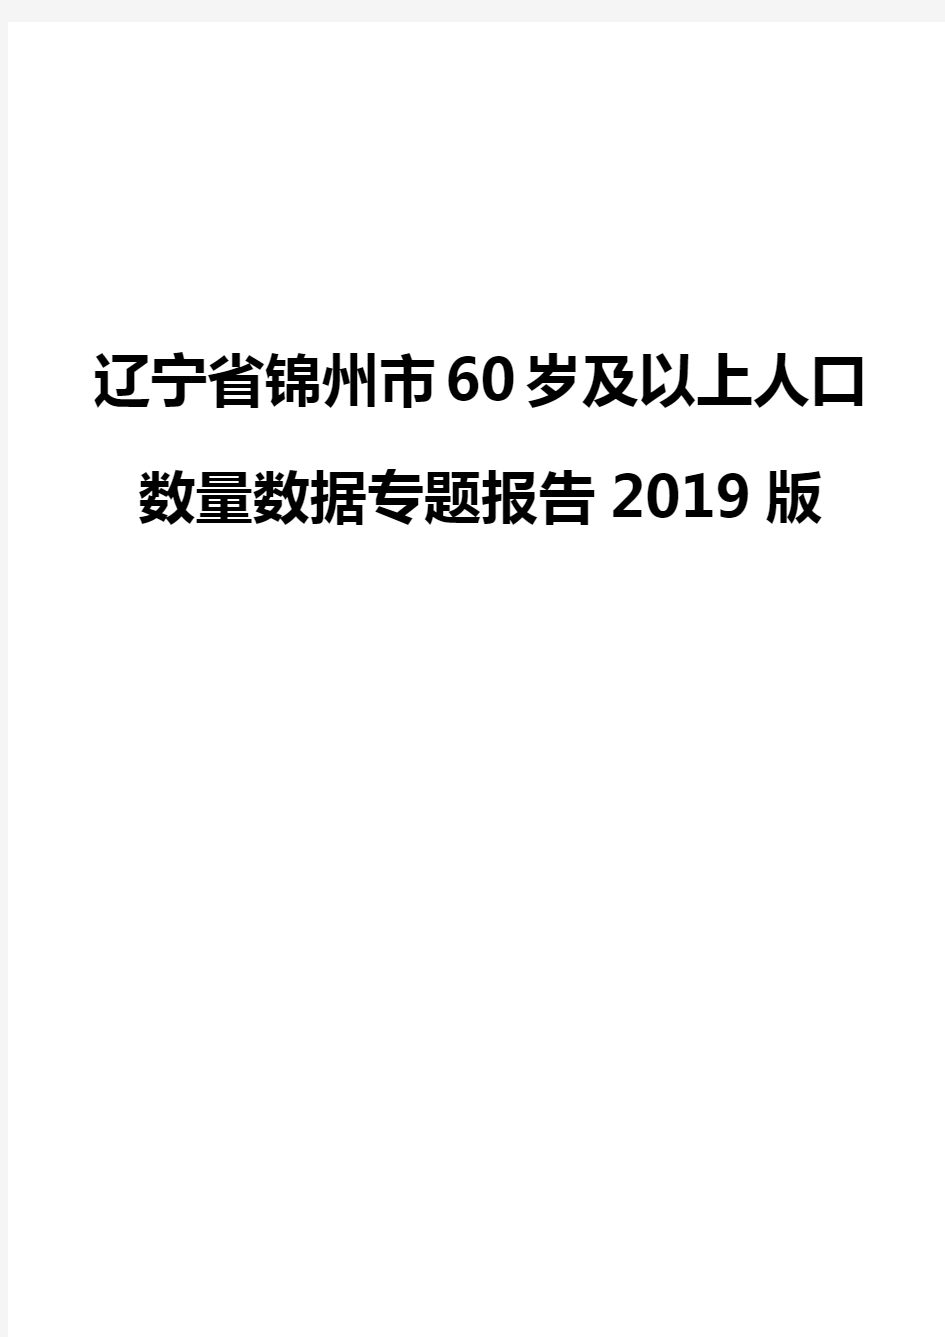 辽宁省锦州市60岁及以上人口数量数据专题报告2019版